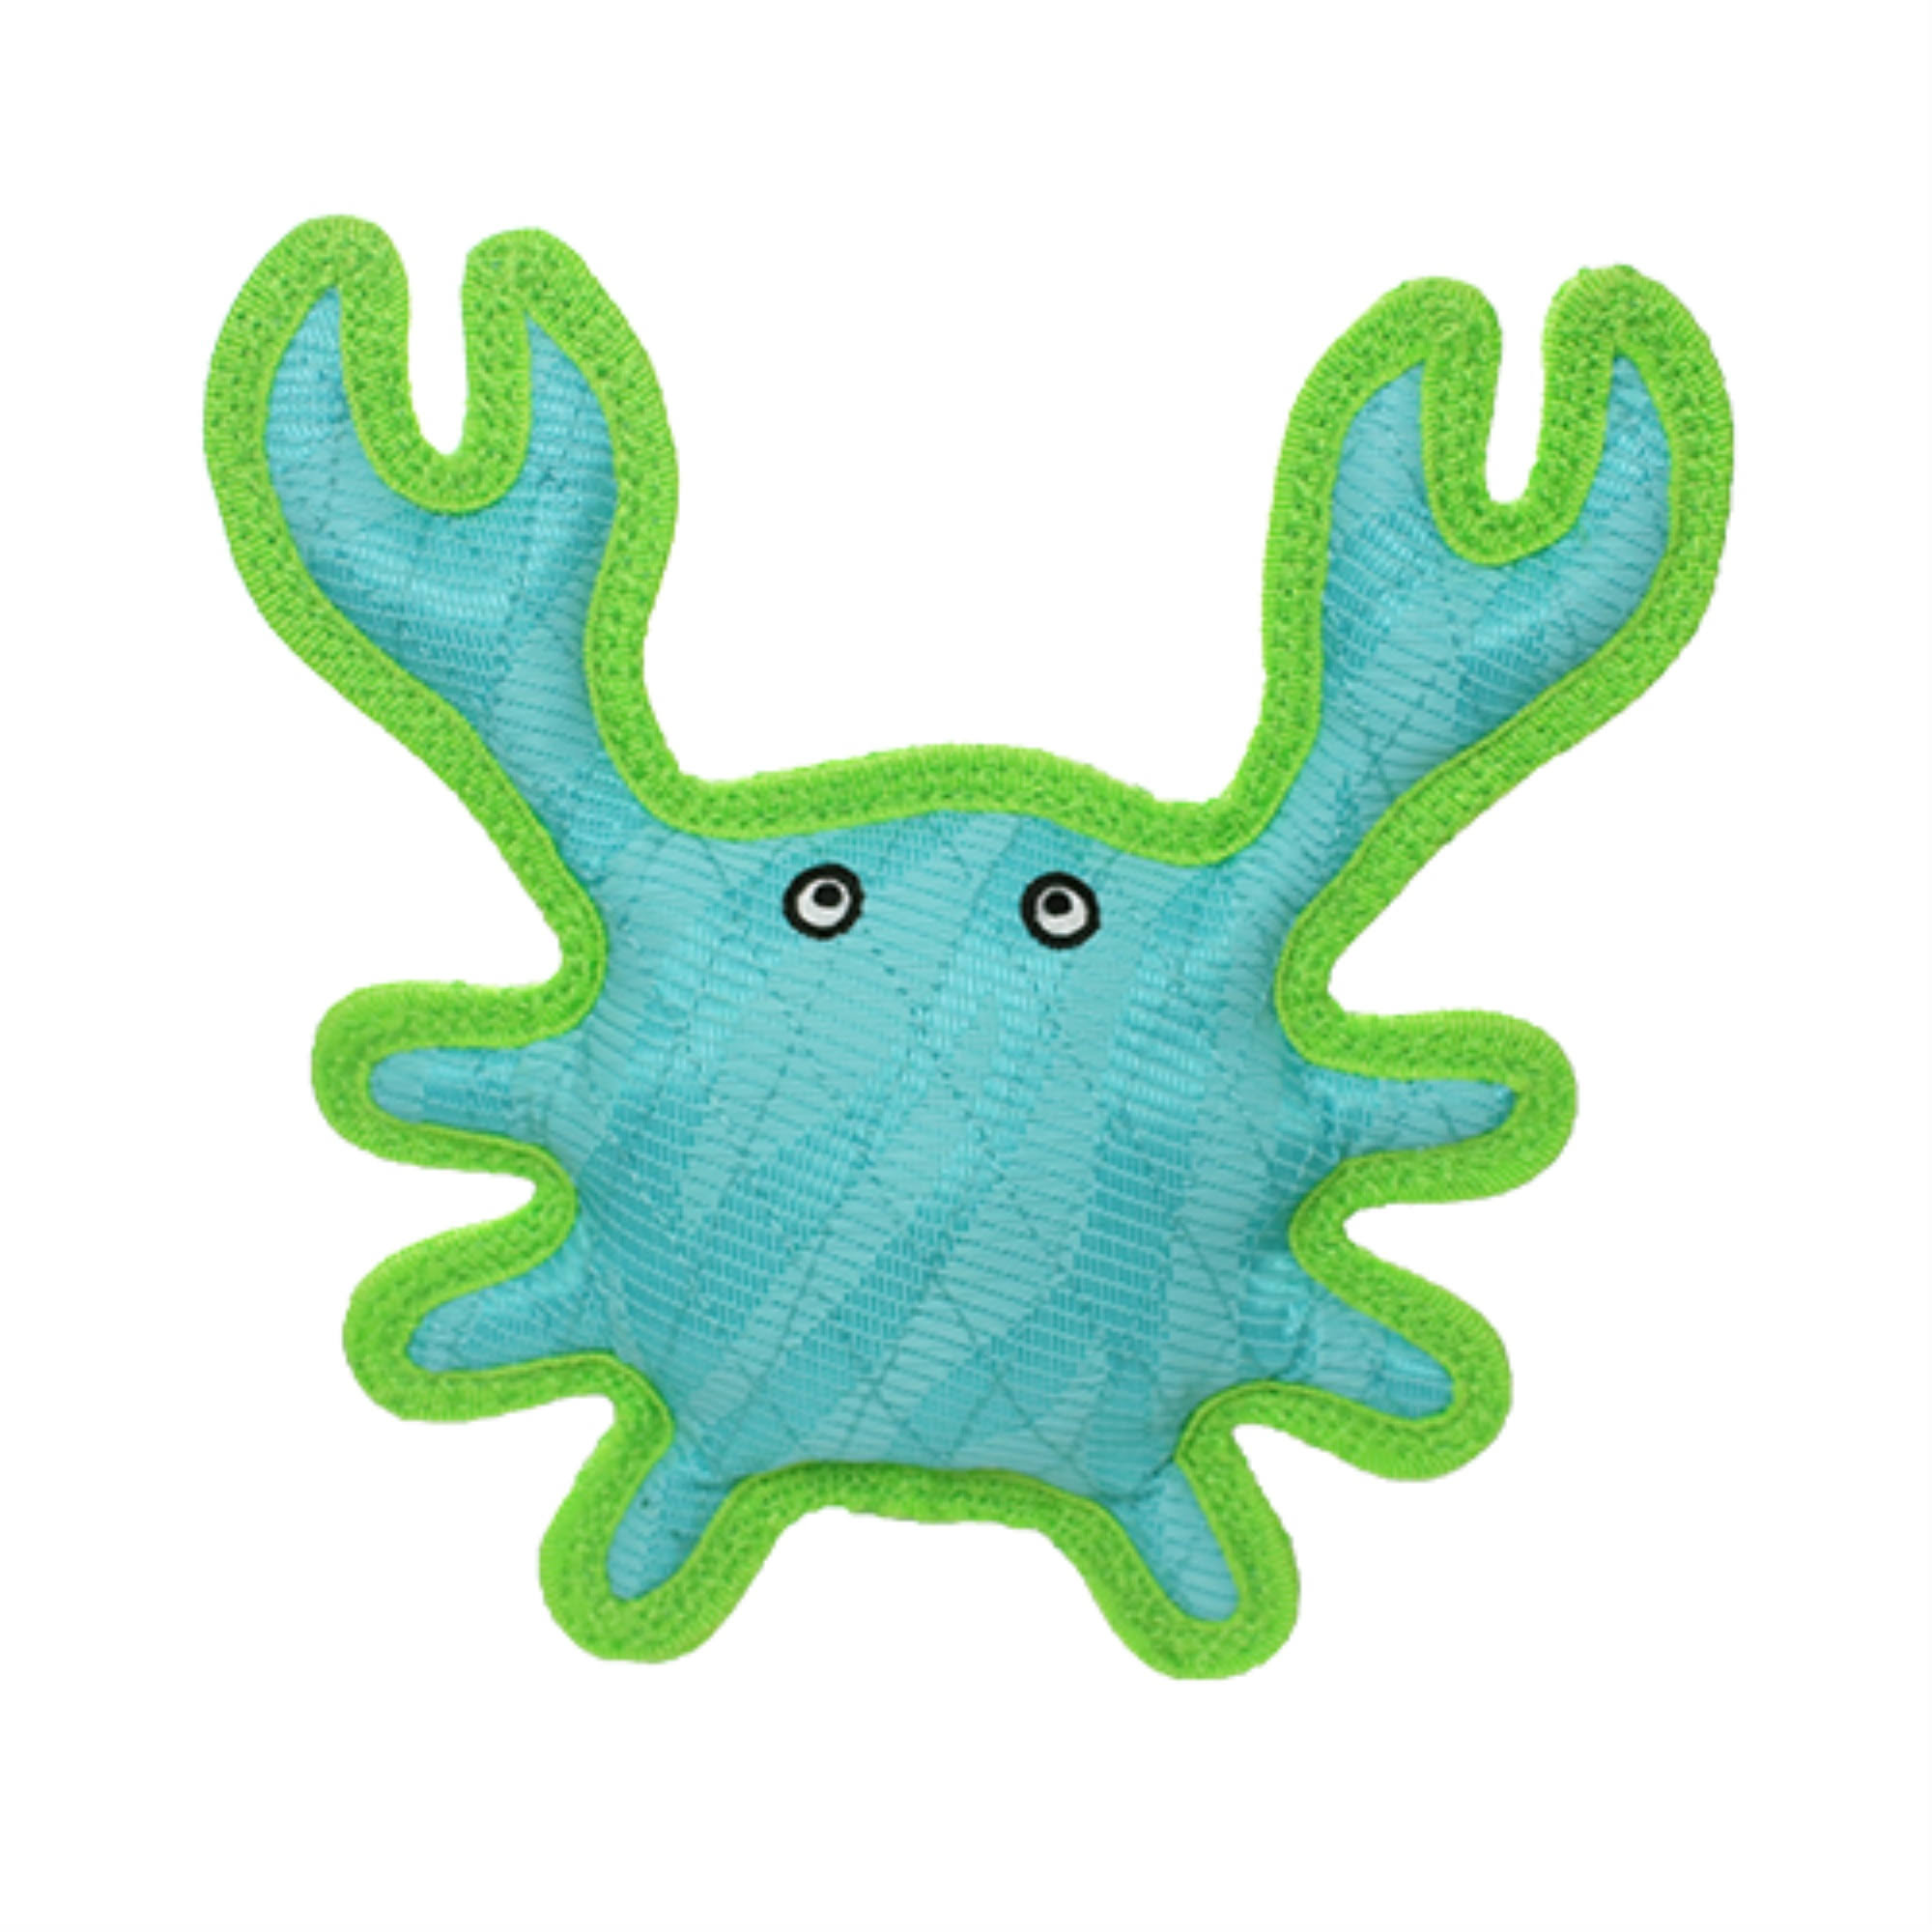 DuraForce Crab Dog Toy BLUE.